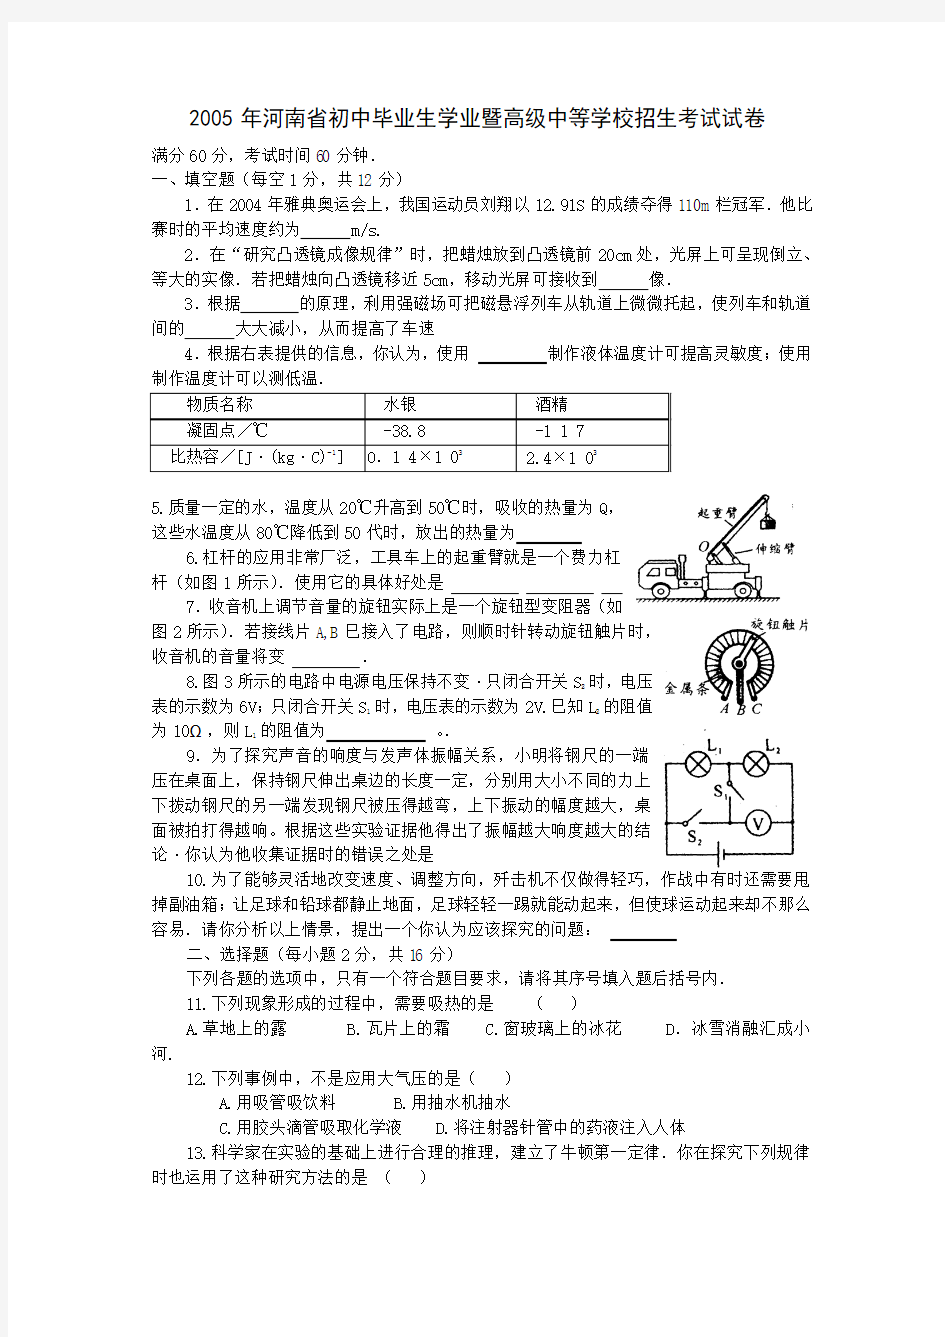 2005年河南省初中毕业生学业暨高级中等学校招生考试试卷推荐